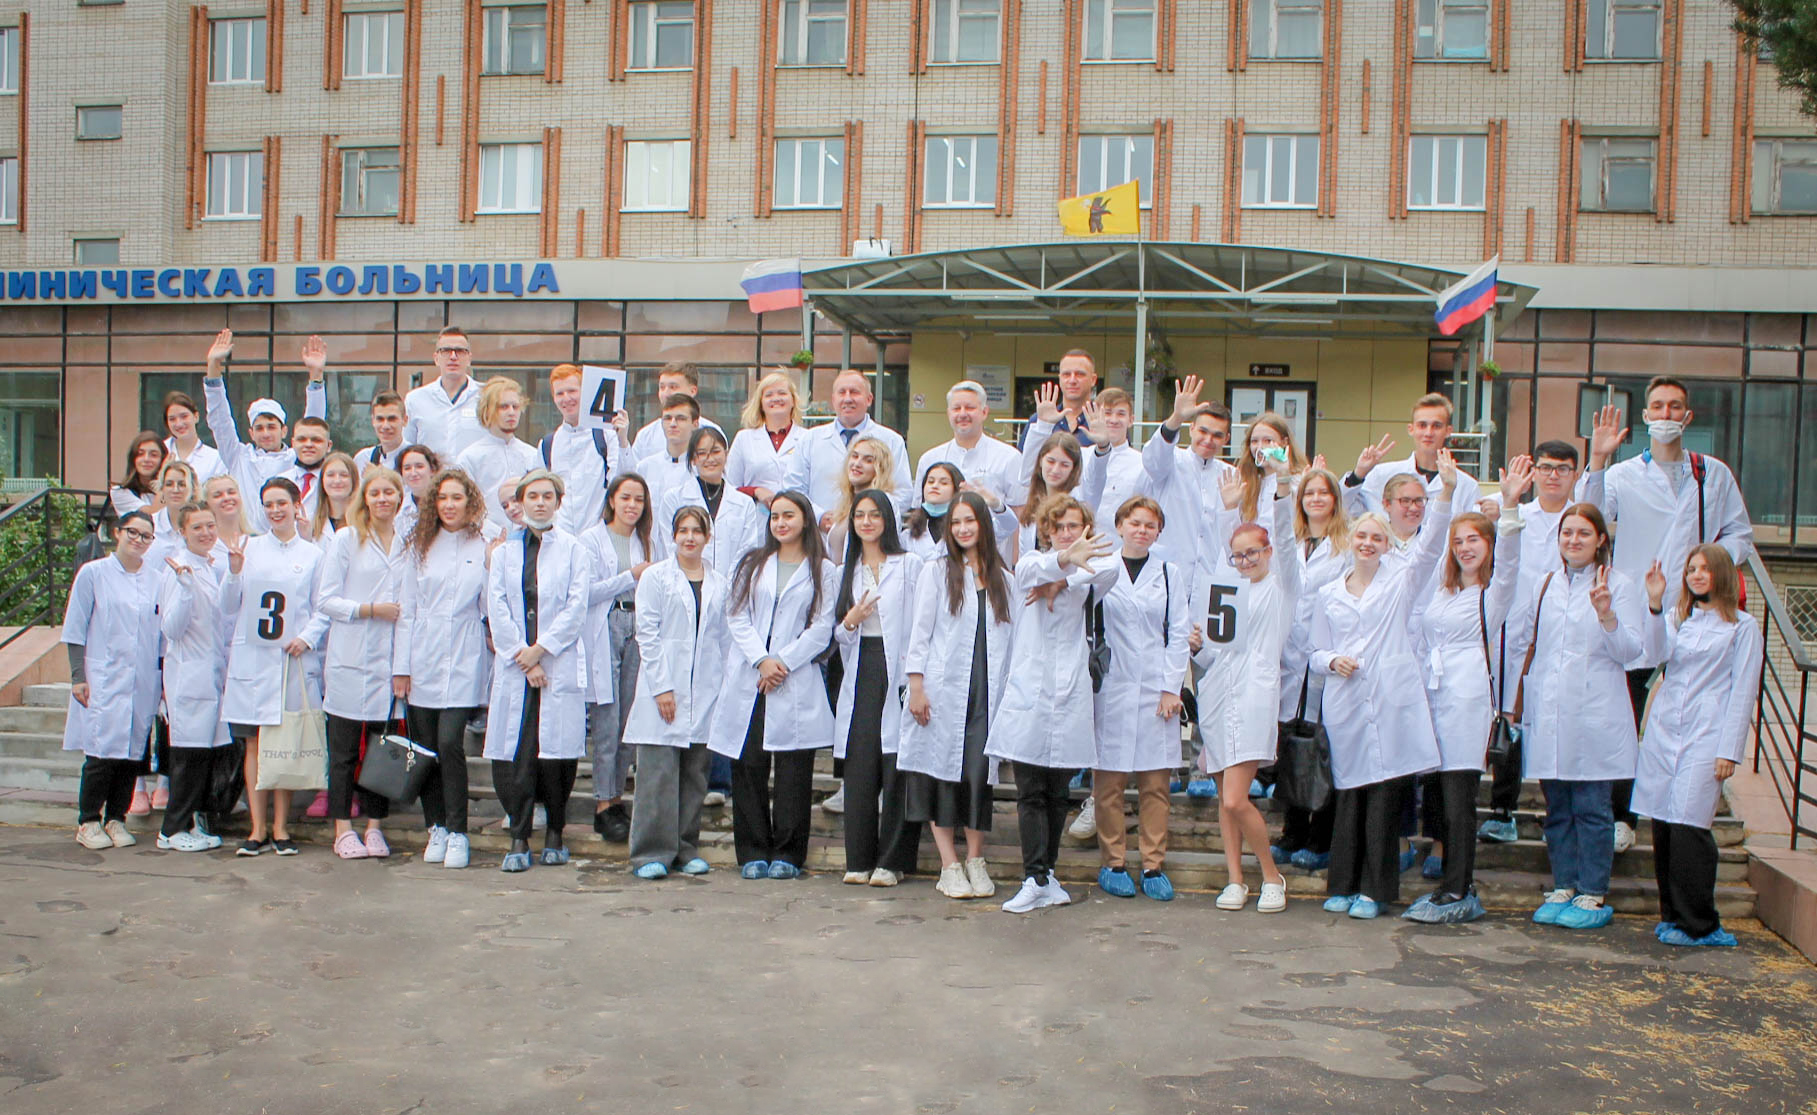 Ярославская областная клиническая больница отделения